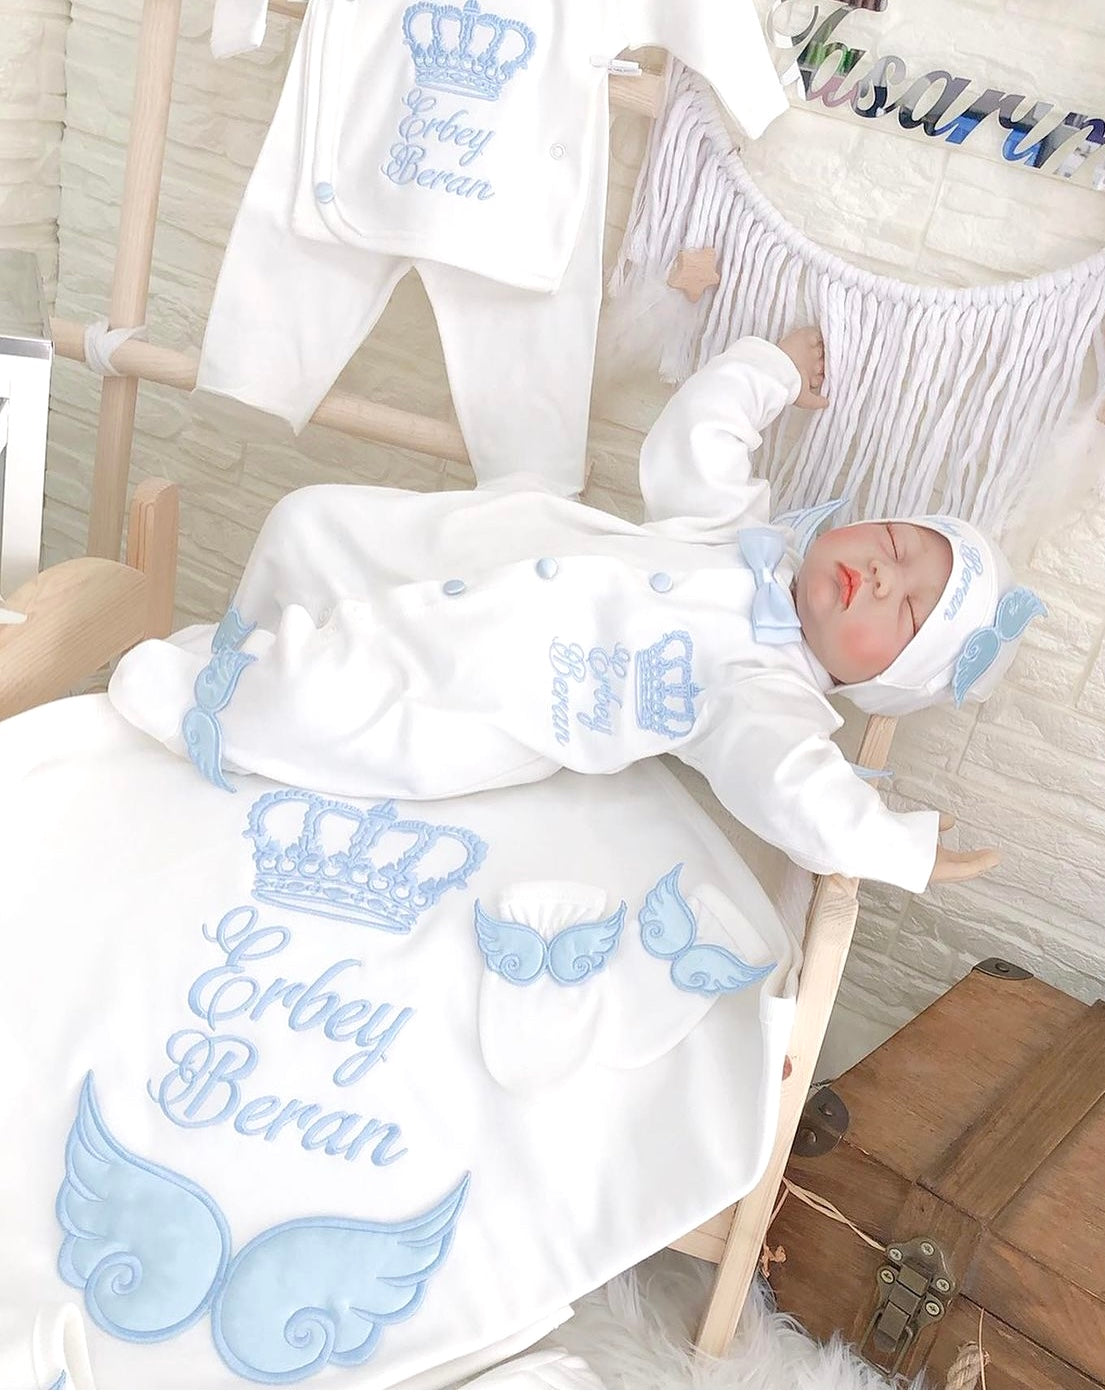 Jungen Neugeborenen Set Personalisiert Kuscheldecke Babydecke – Babyworld219